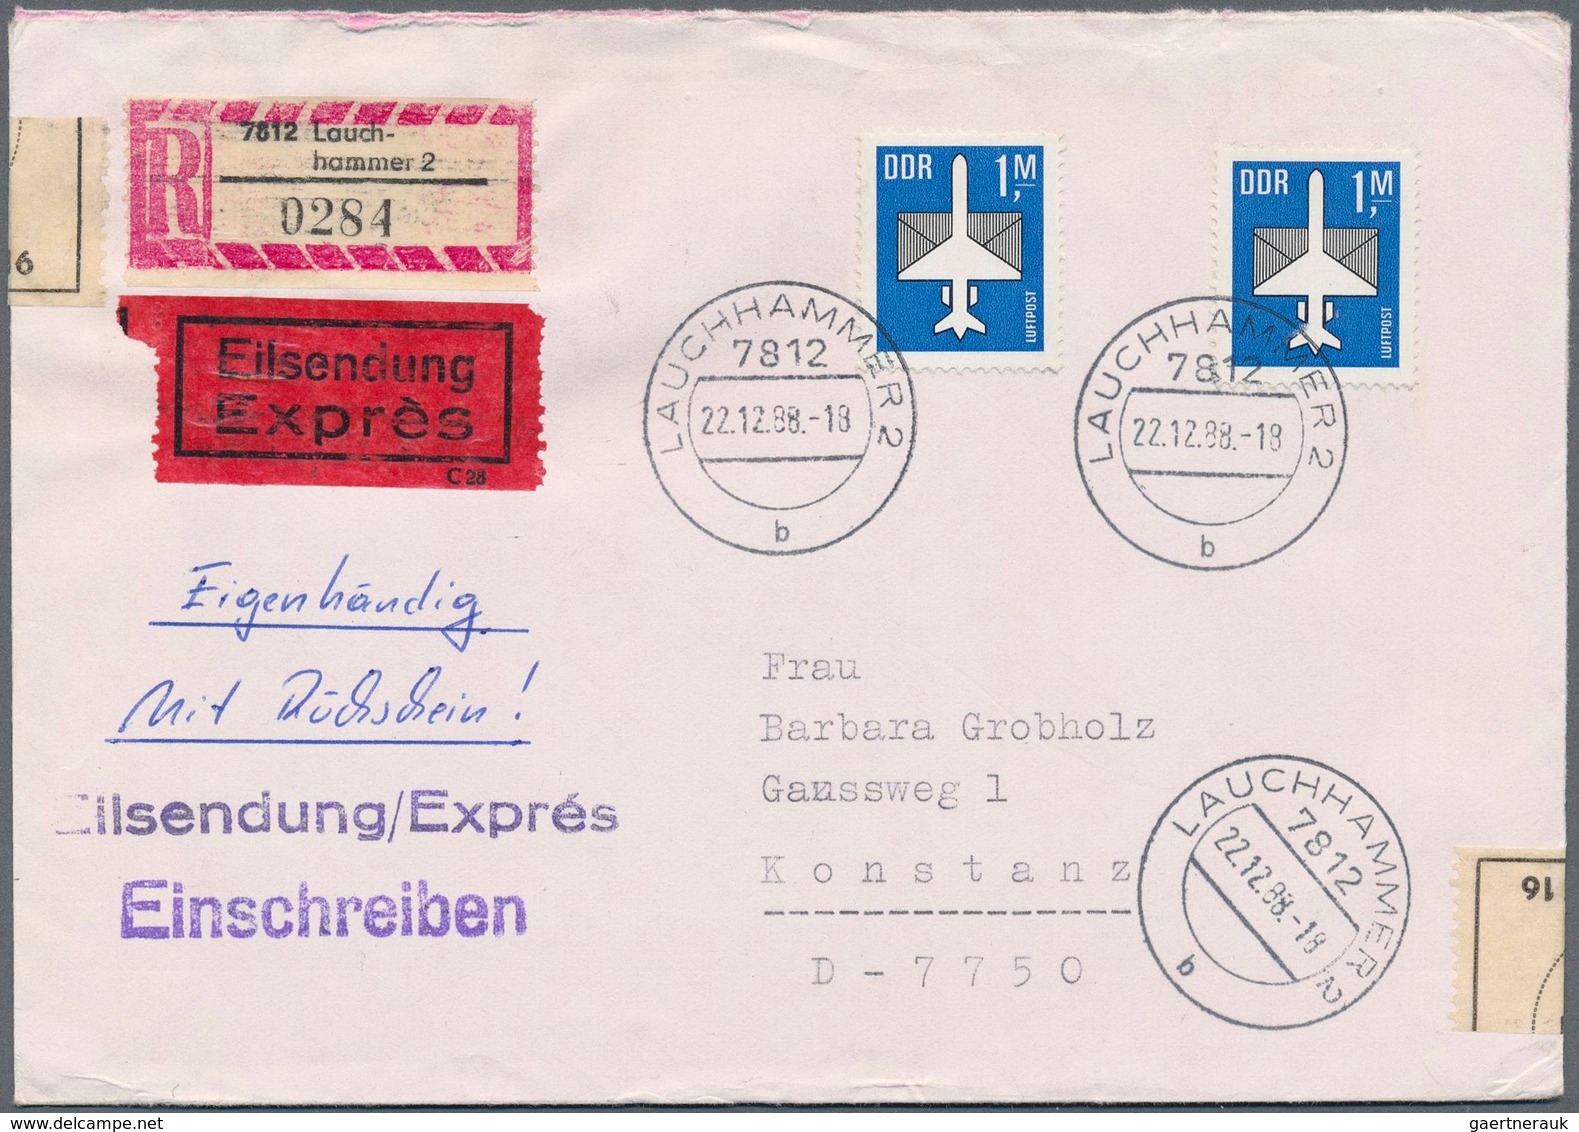 32355 DDR: 1957/1990, Freimarken Einzel- und Mehrfachfrankaturen: gehaltvolle Spezialsammlung mit über 500